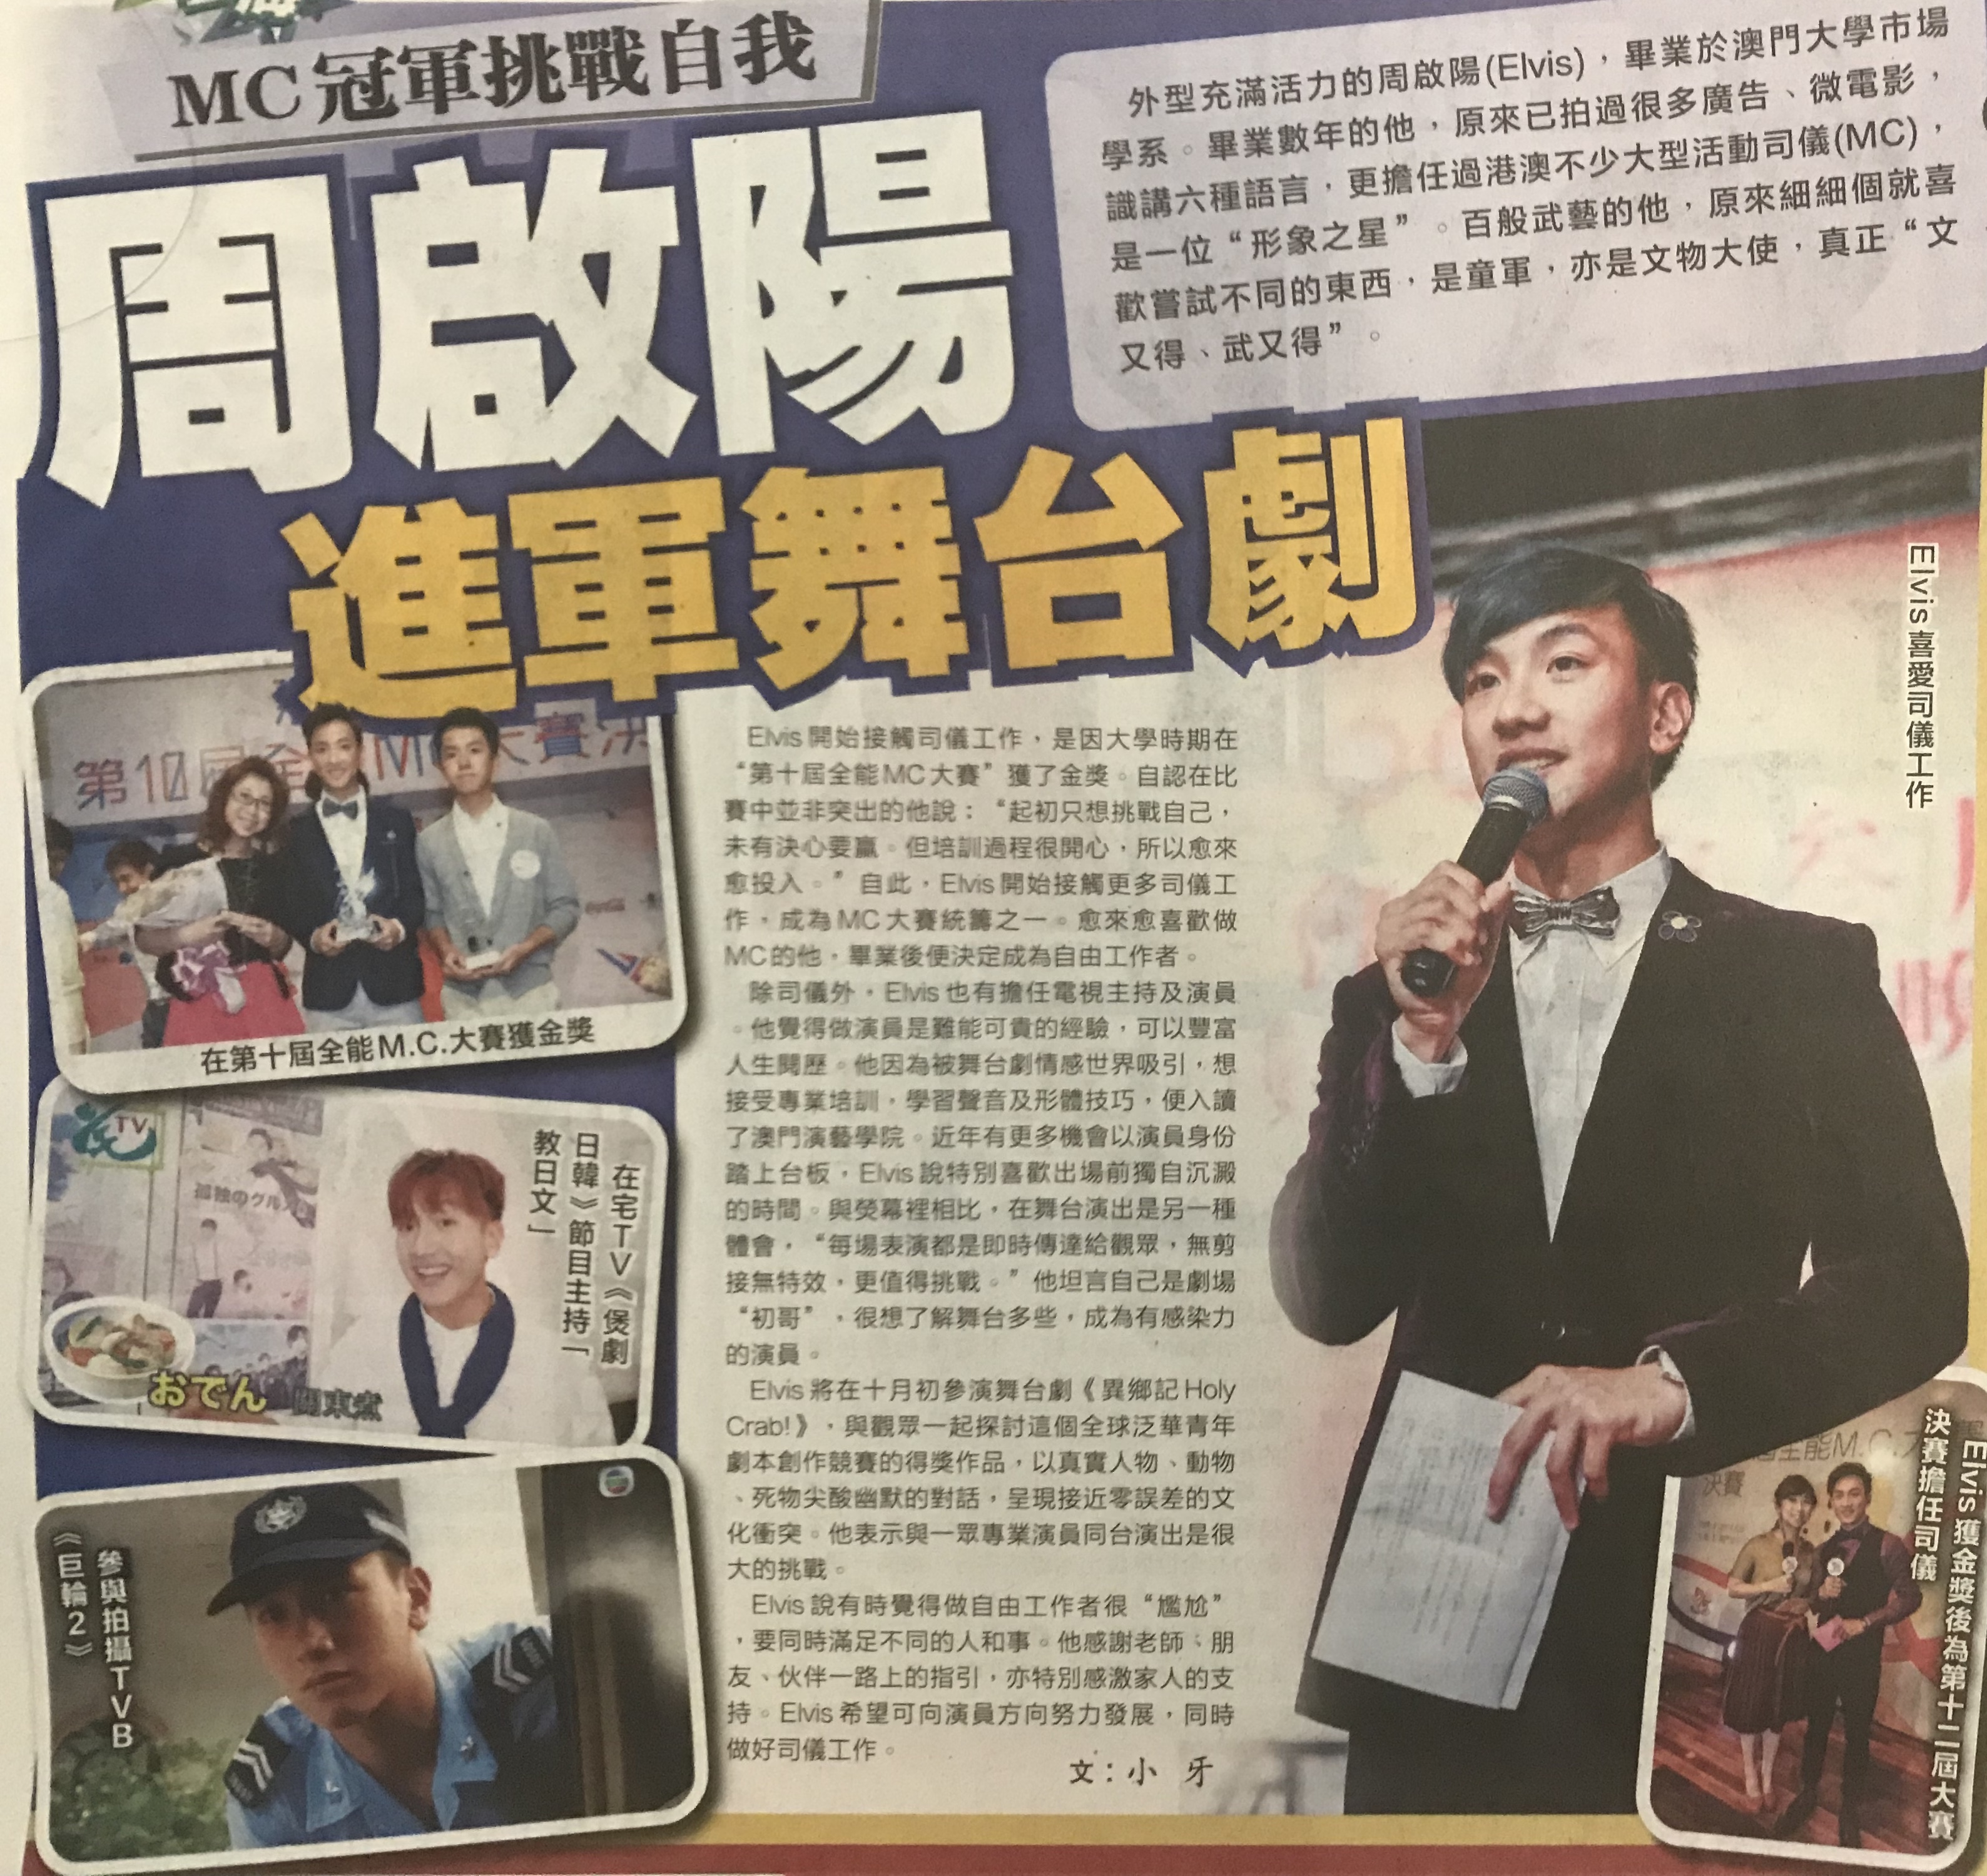 司儀主持人周啓陽 Elvis Chao之媒體報導: MC冠軍挑戰自我